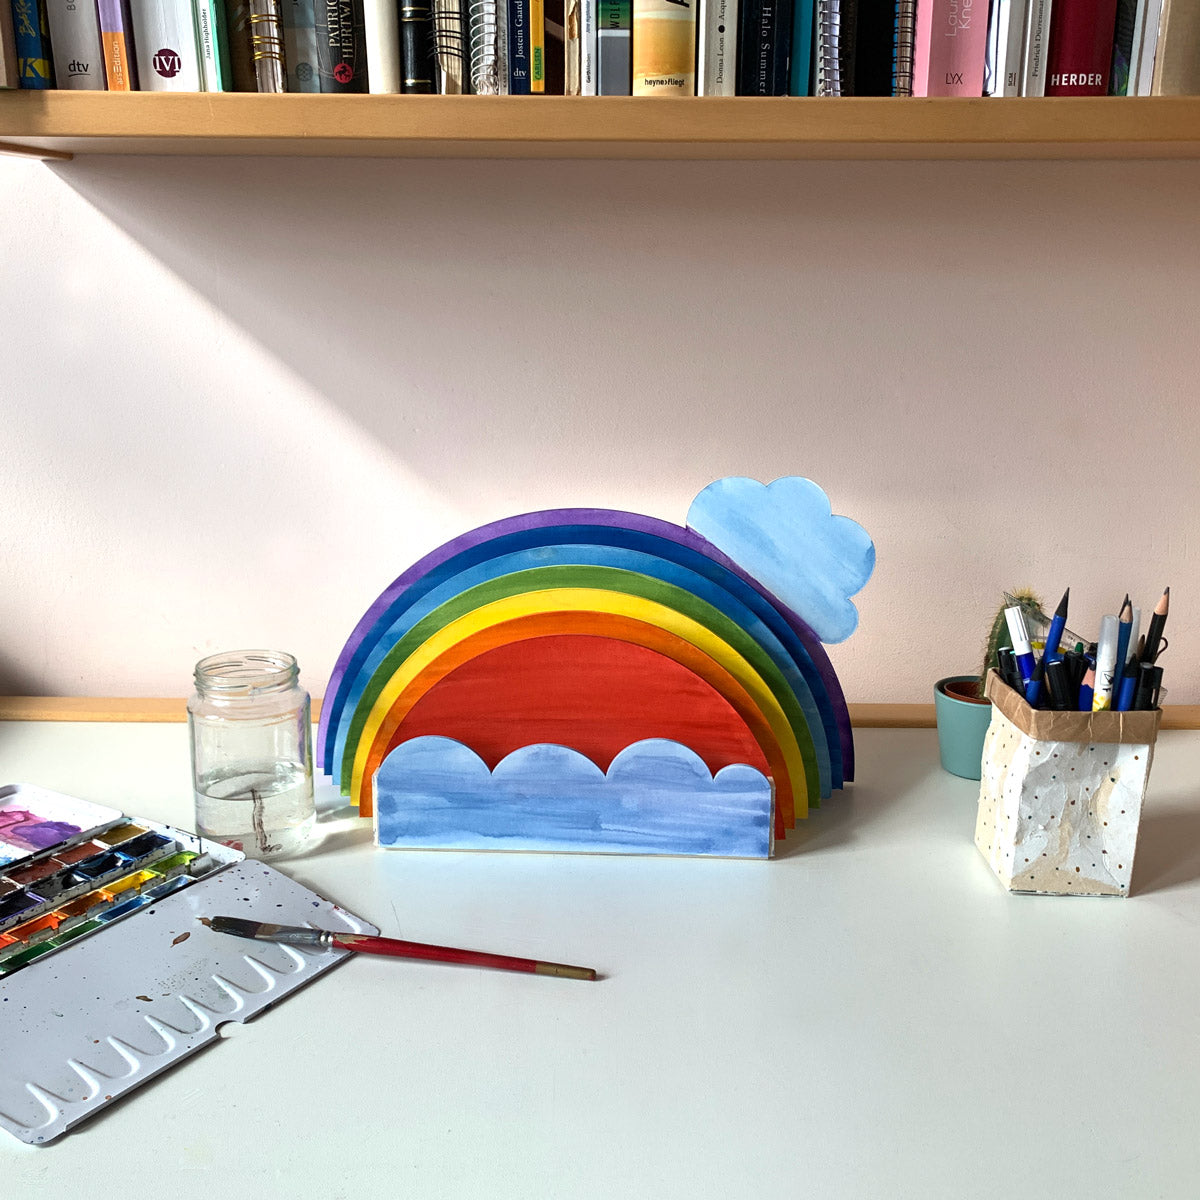 Schreibtischorganizer Regenbogen aus nachhaltigem Material - ideal zum Bemalen